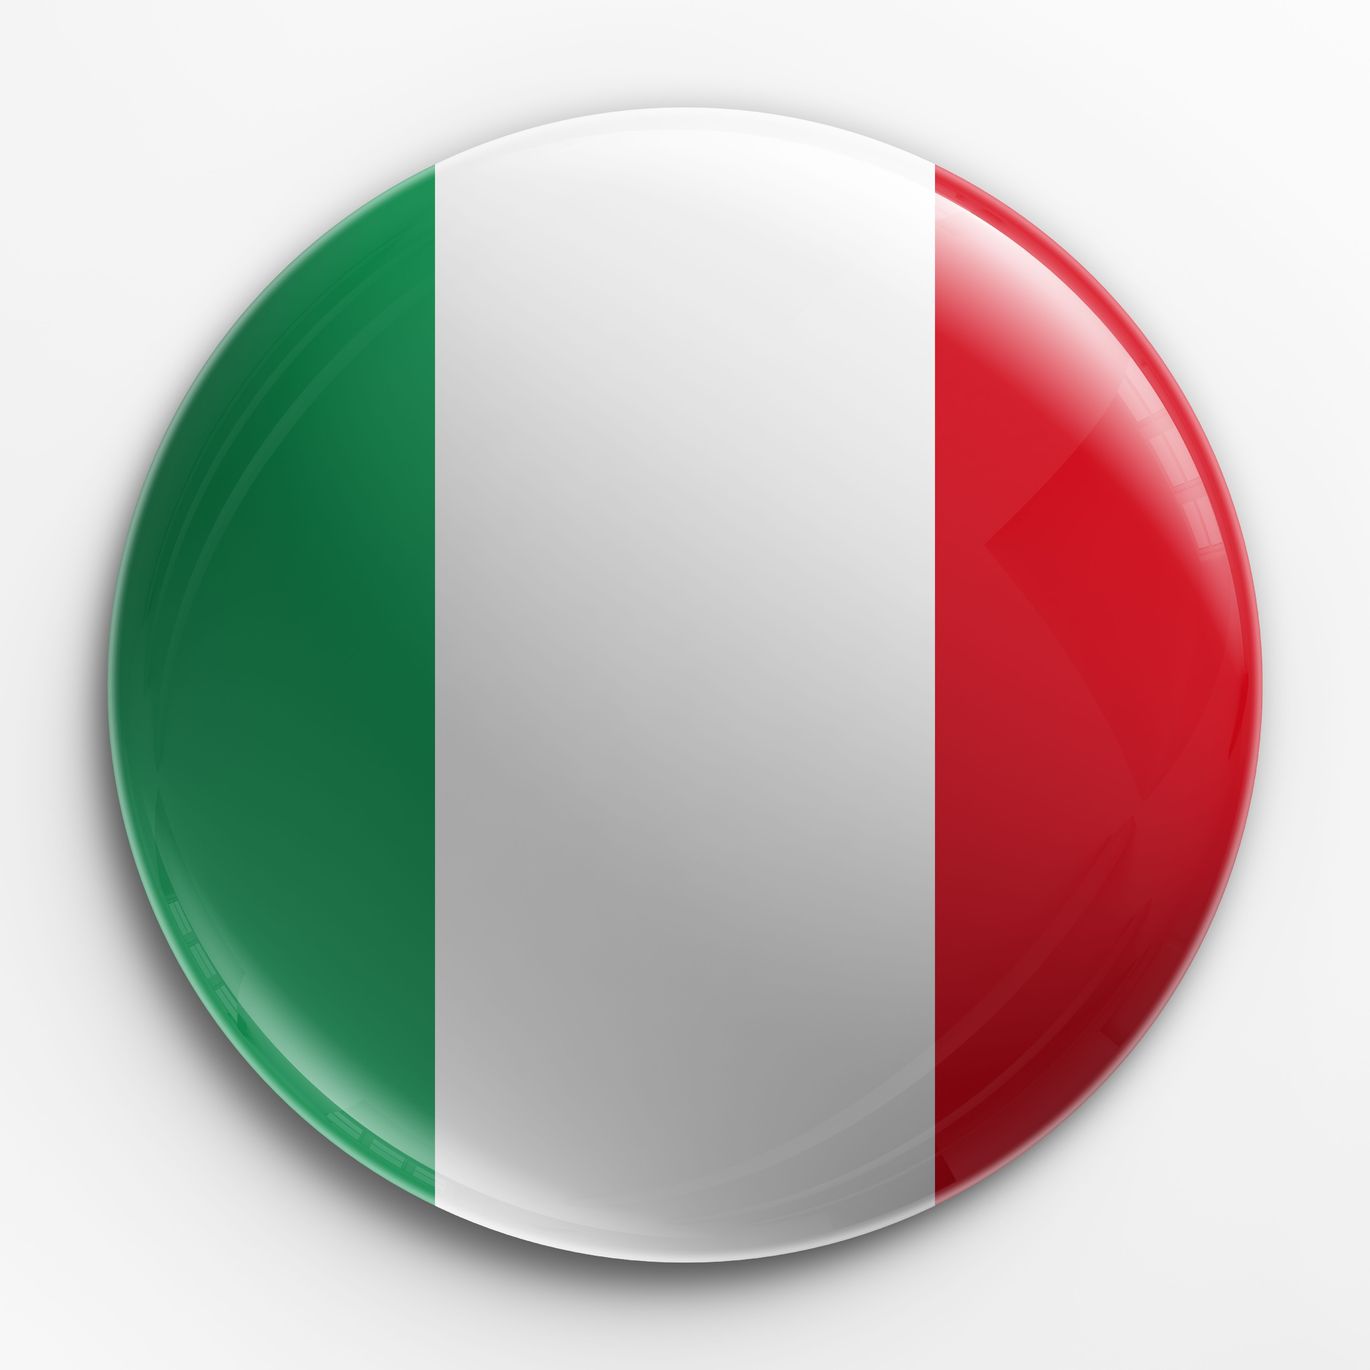 Palabras italianas que utilizamos en el español usualmente (Parte II).jpg